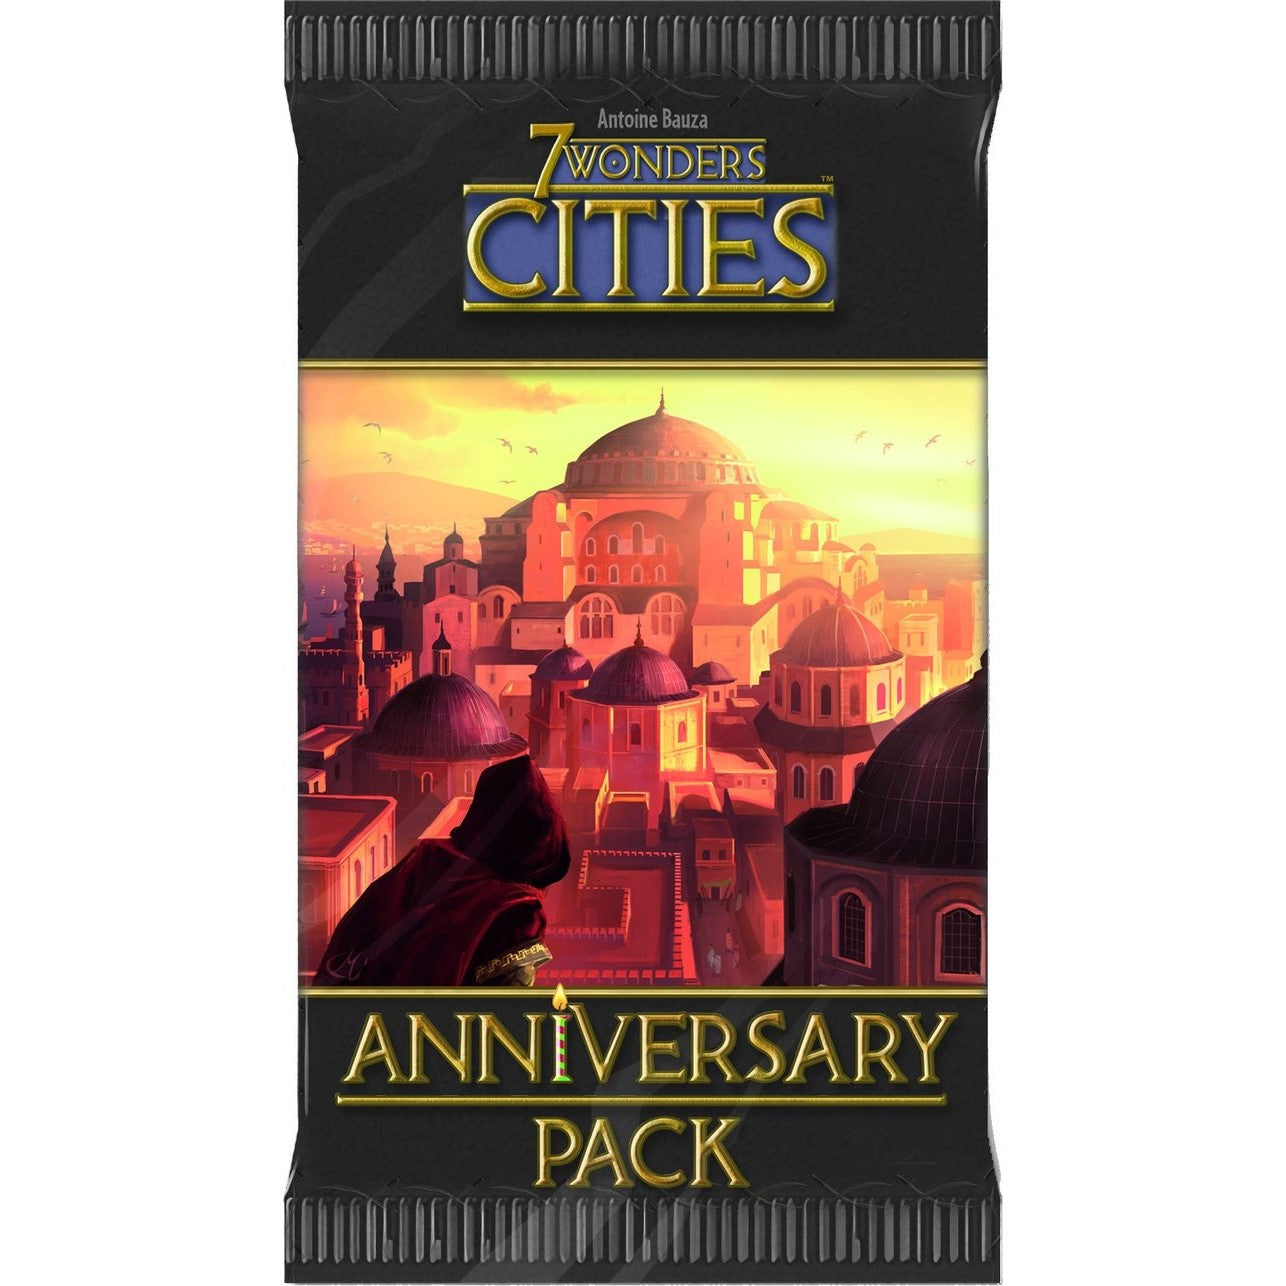 7 Wonders: Cities - Anniversary Pack